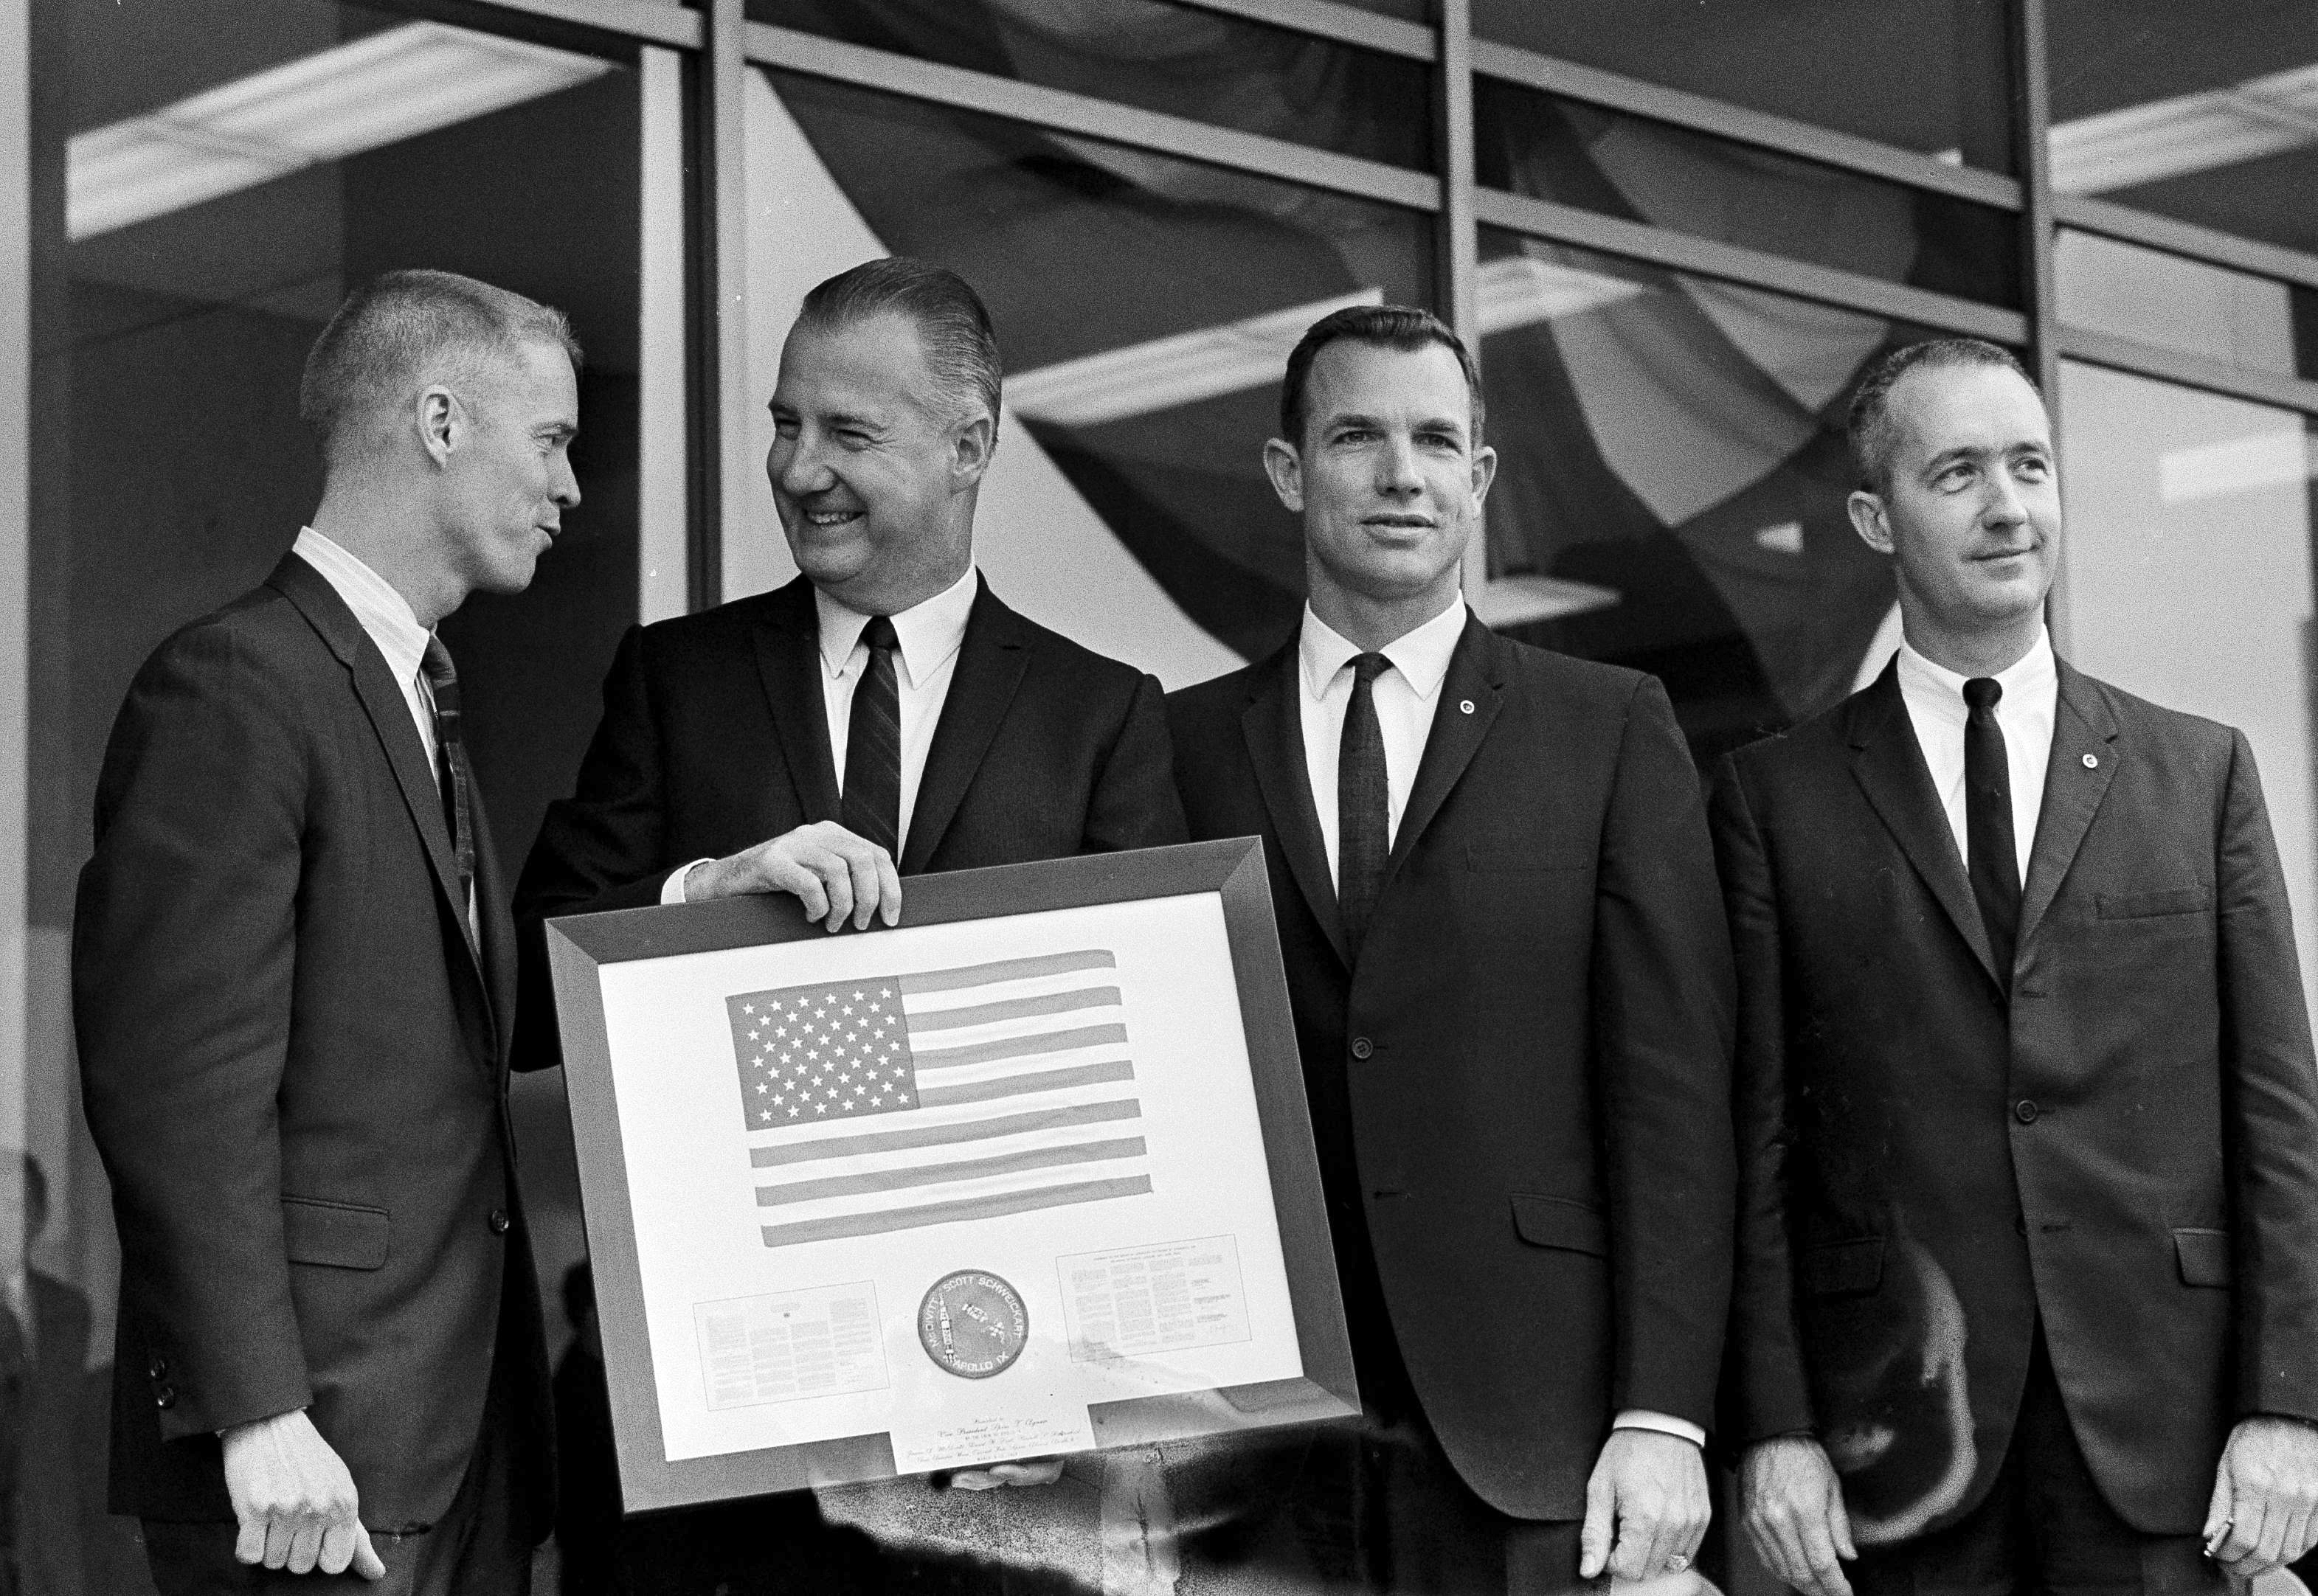  El vicepresidente Spiro Agnew sostiene una bandera estadounidense enmarcada, que le entregó la tripulación del Apolo 9, mientras posa con los astronautas el 26 de marzo de 1969 en Washington. Desde la izquierda: Russell Schweikart, Agnew y Air Force Cols. David Scott y James McDivitt. (Foto AP/Harvey Georges, archivo)
